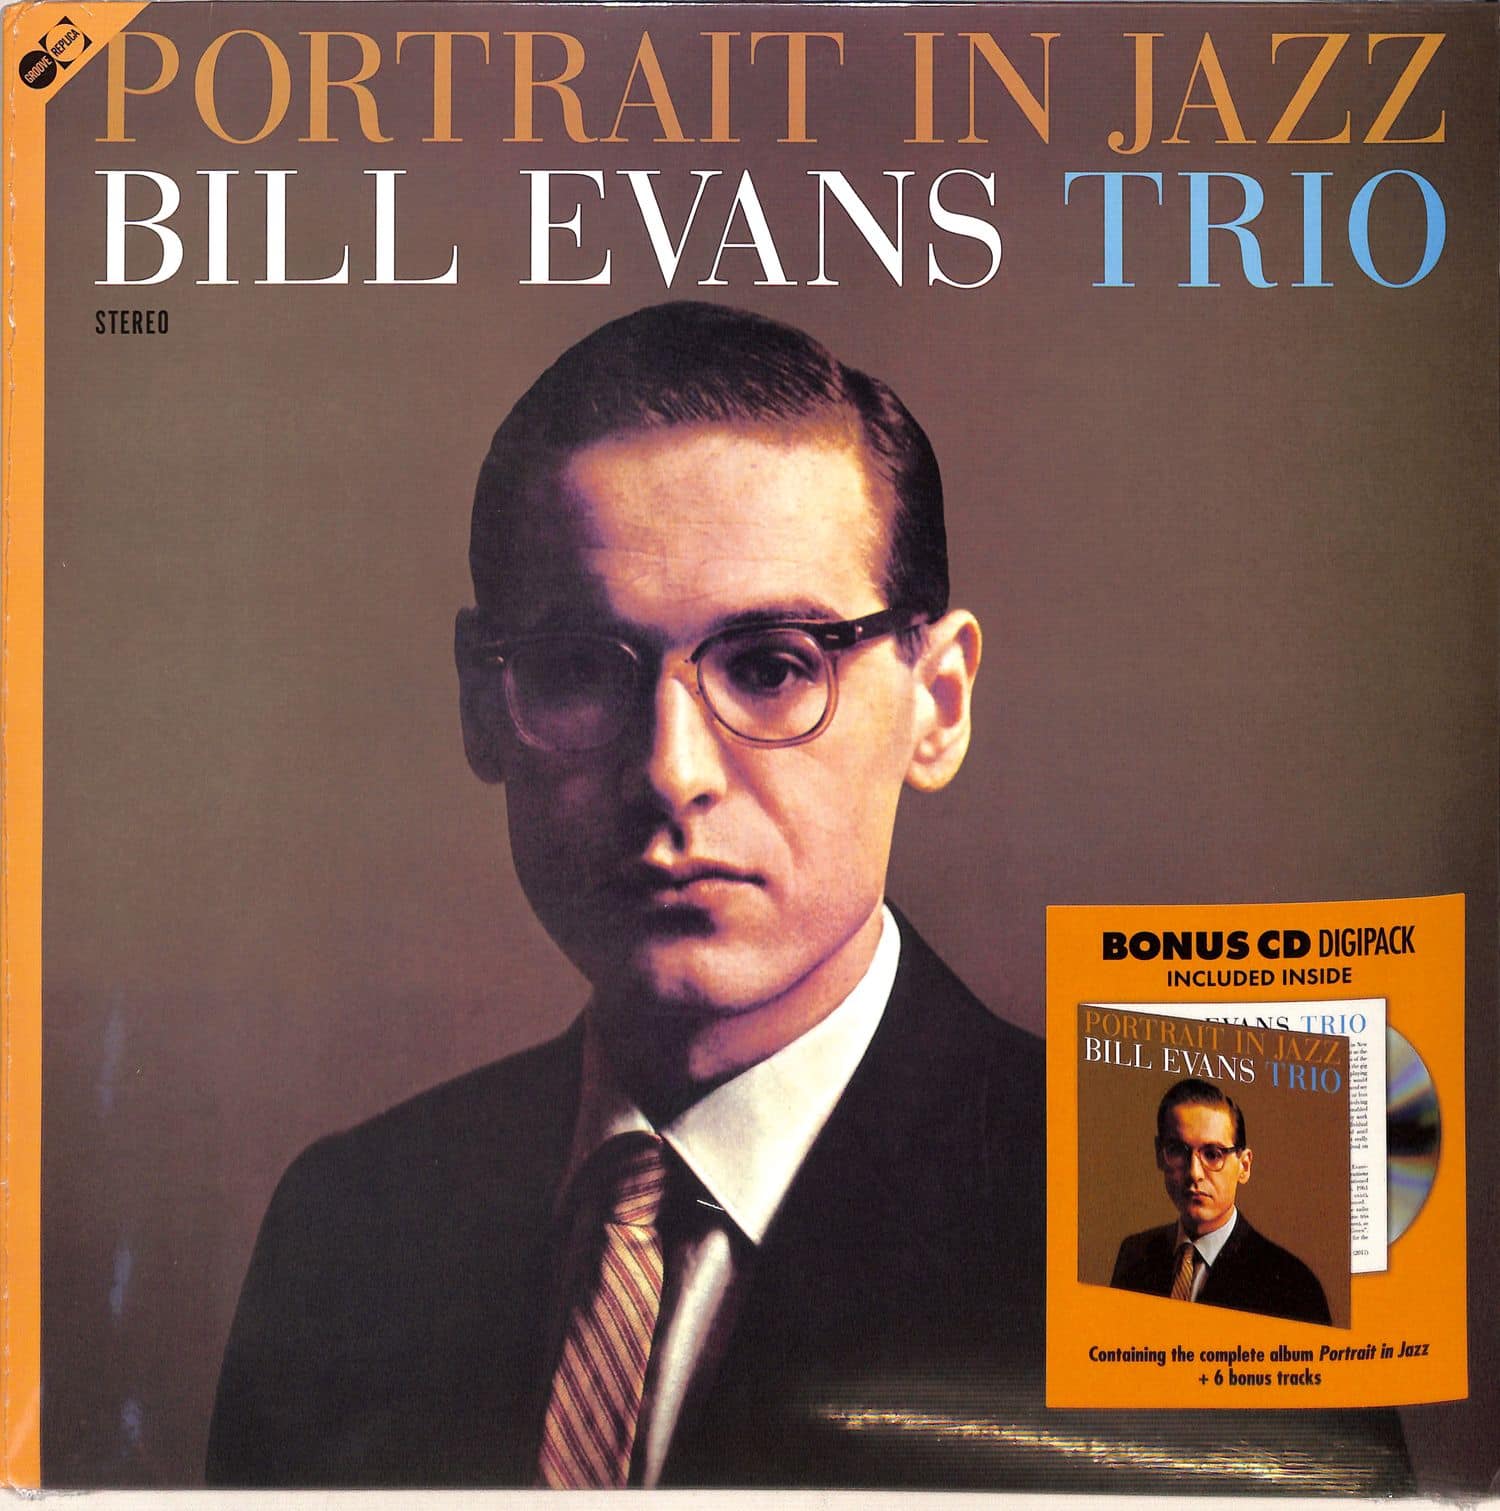 Bill Evans Trio - PORTRAIT IN JAZZ 